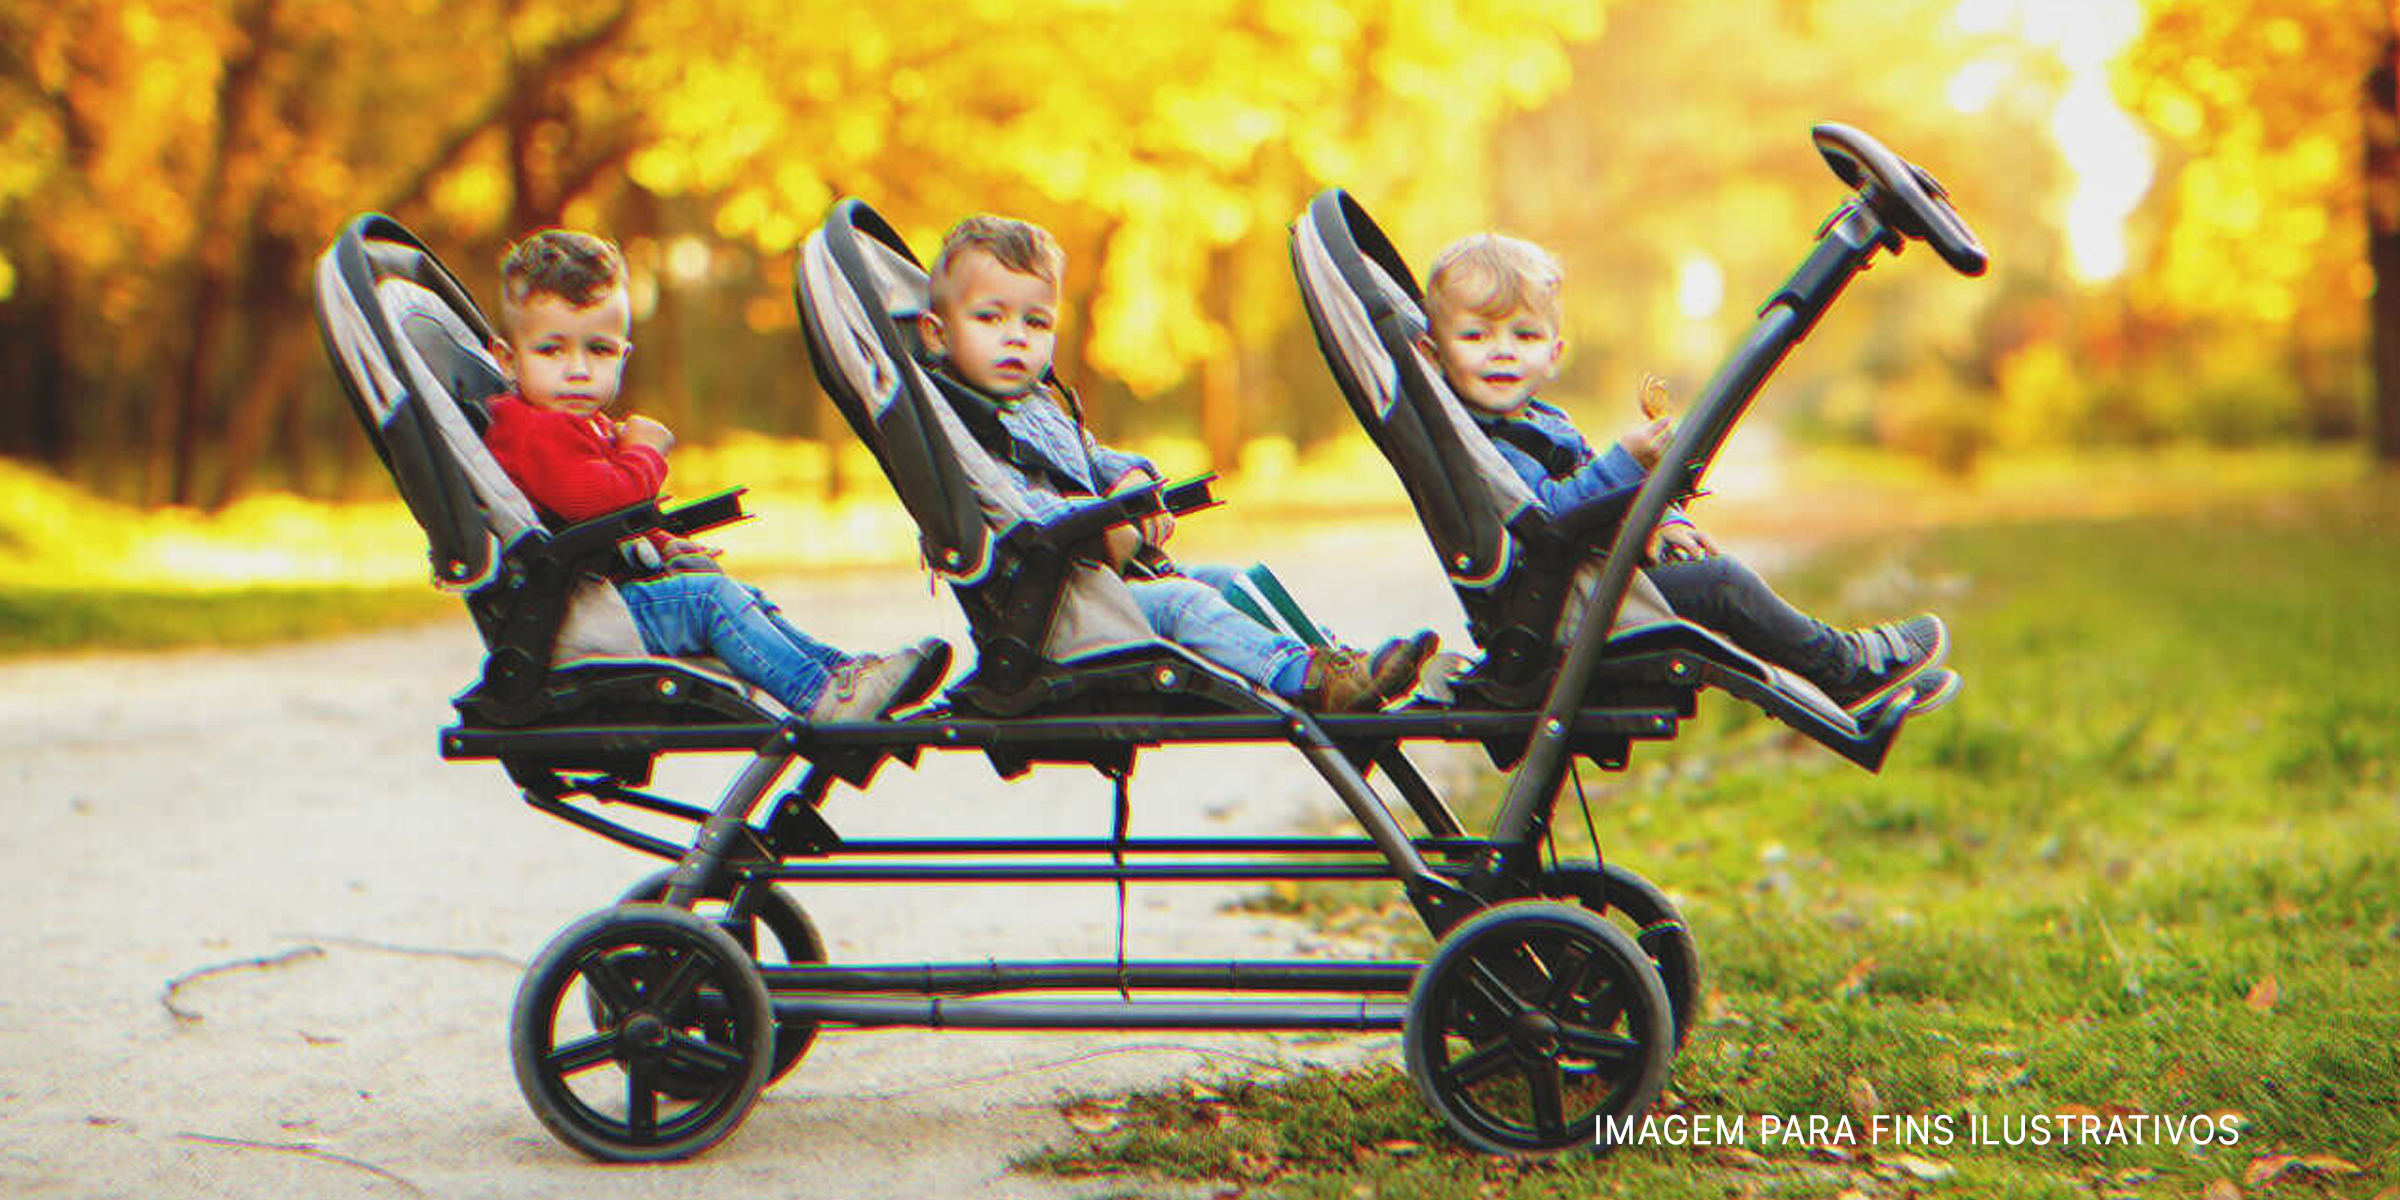 Trigêmeos em um carrinho de bebê | Foto: Shutterstock